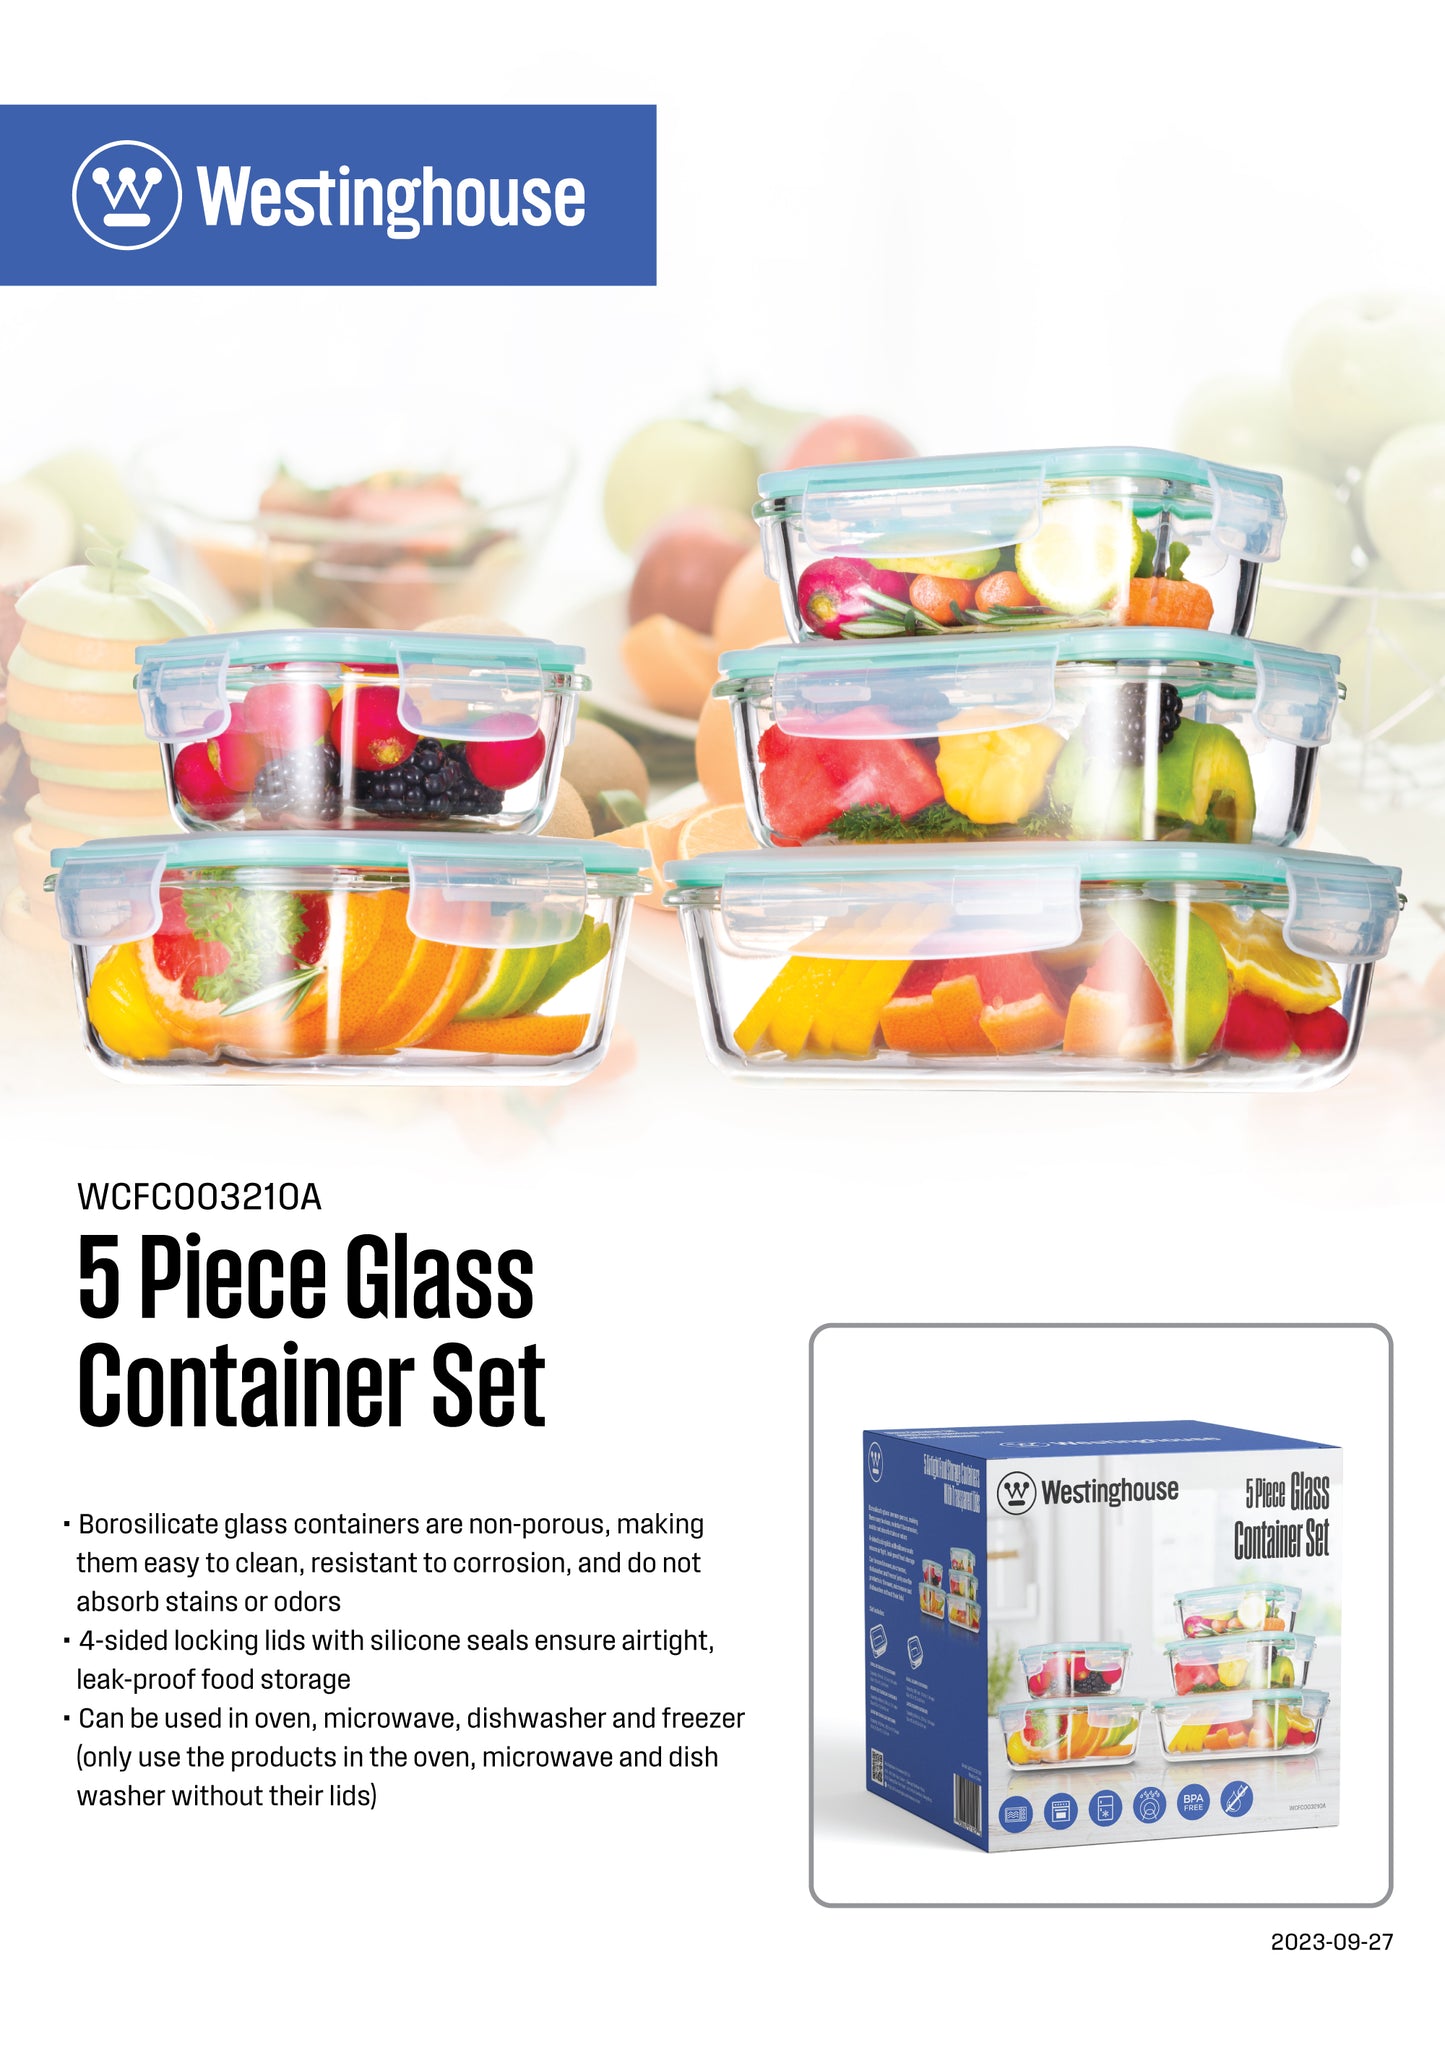 5pc Westinghouse Glass Food Storage Set - 370ml, 640ml, 1050ml, 320ml & 800ml